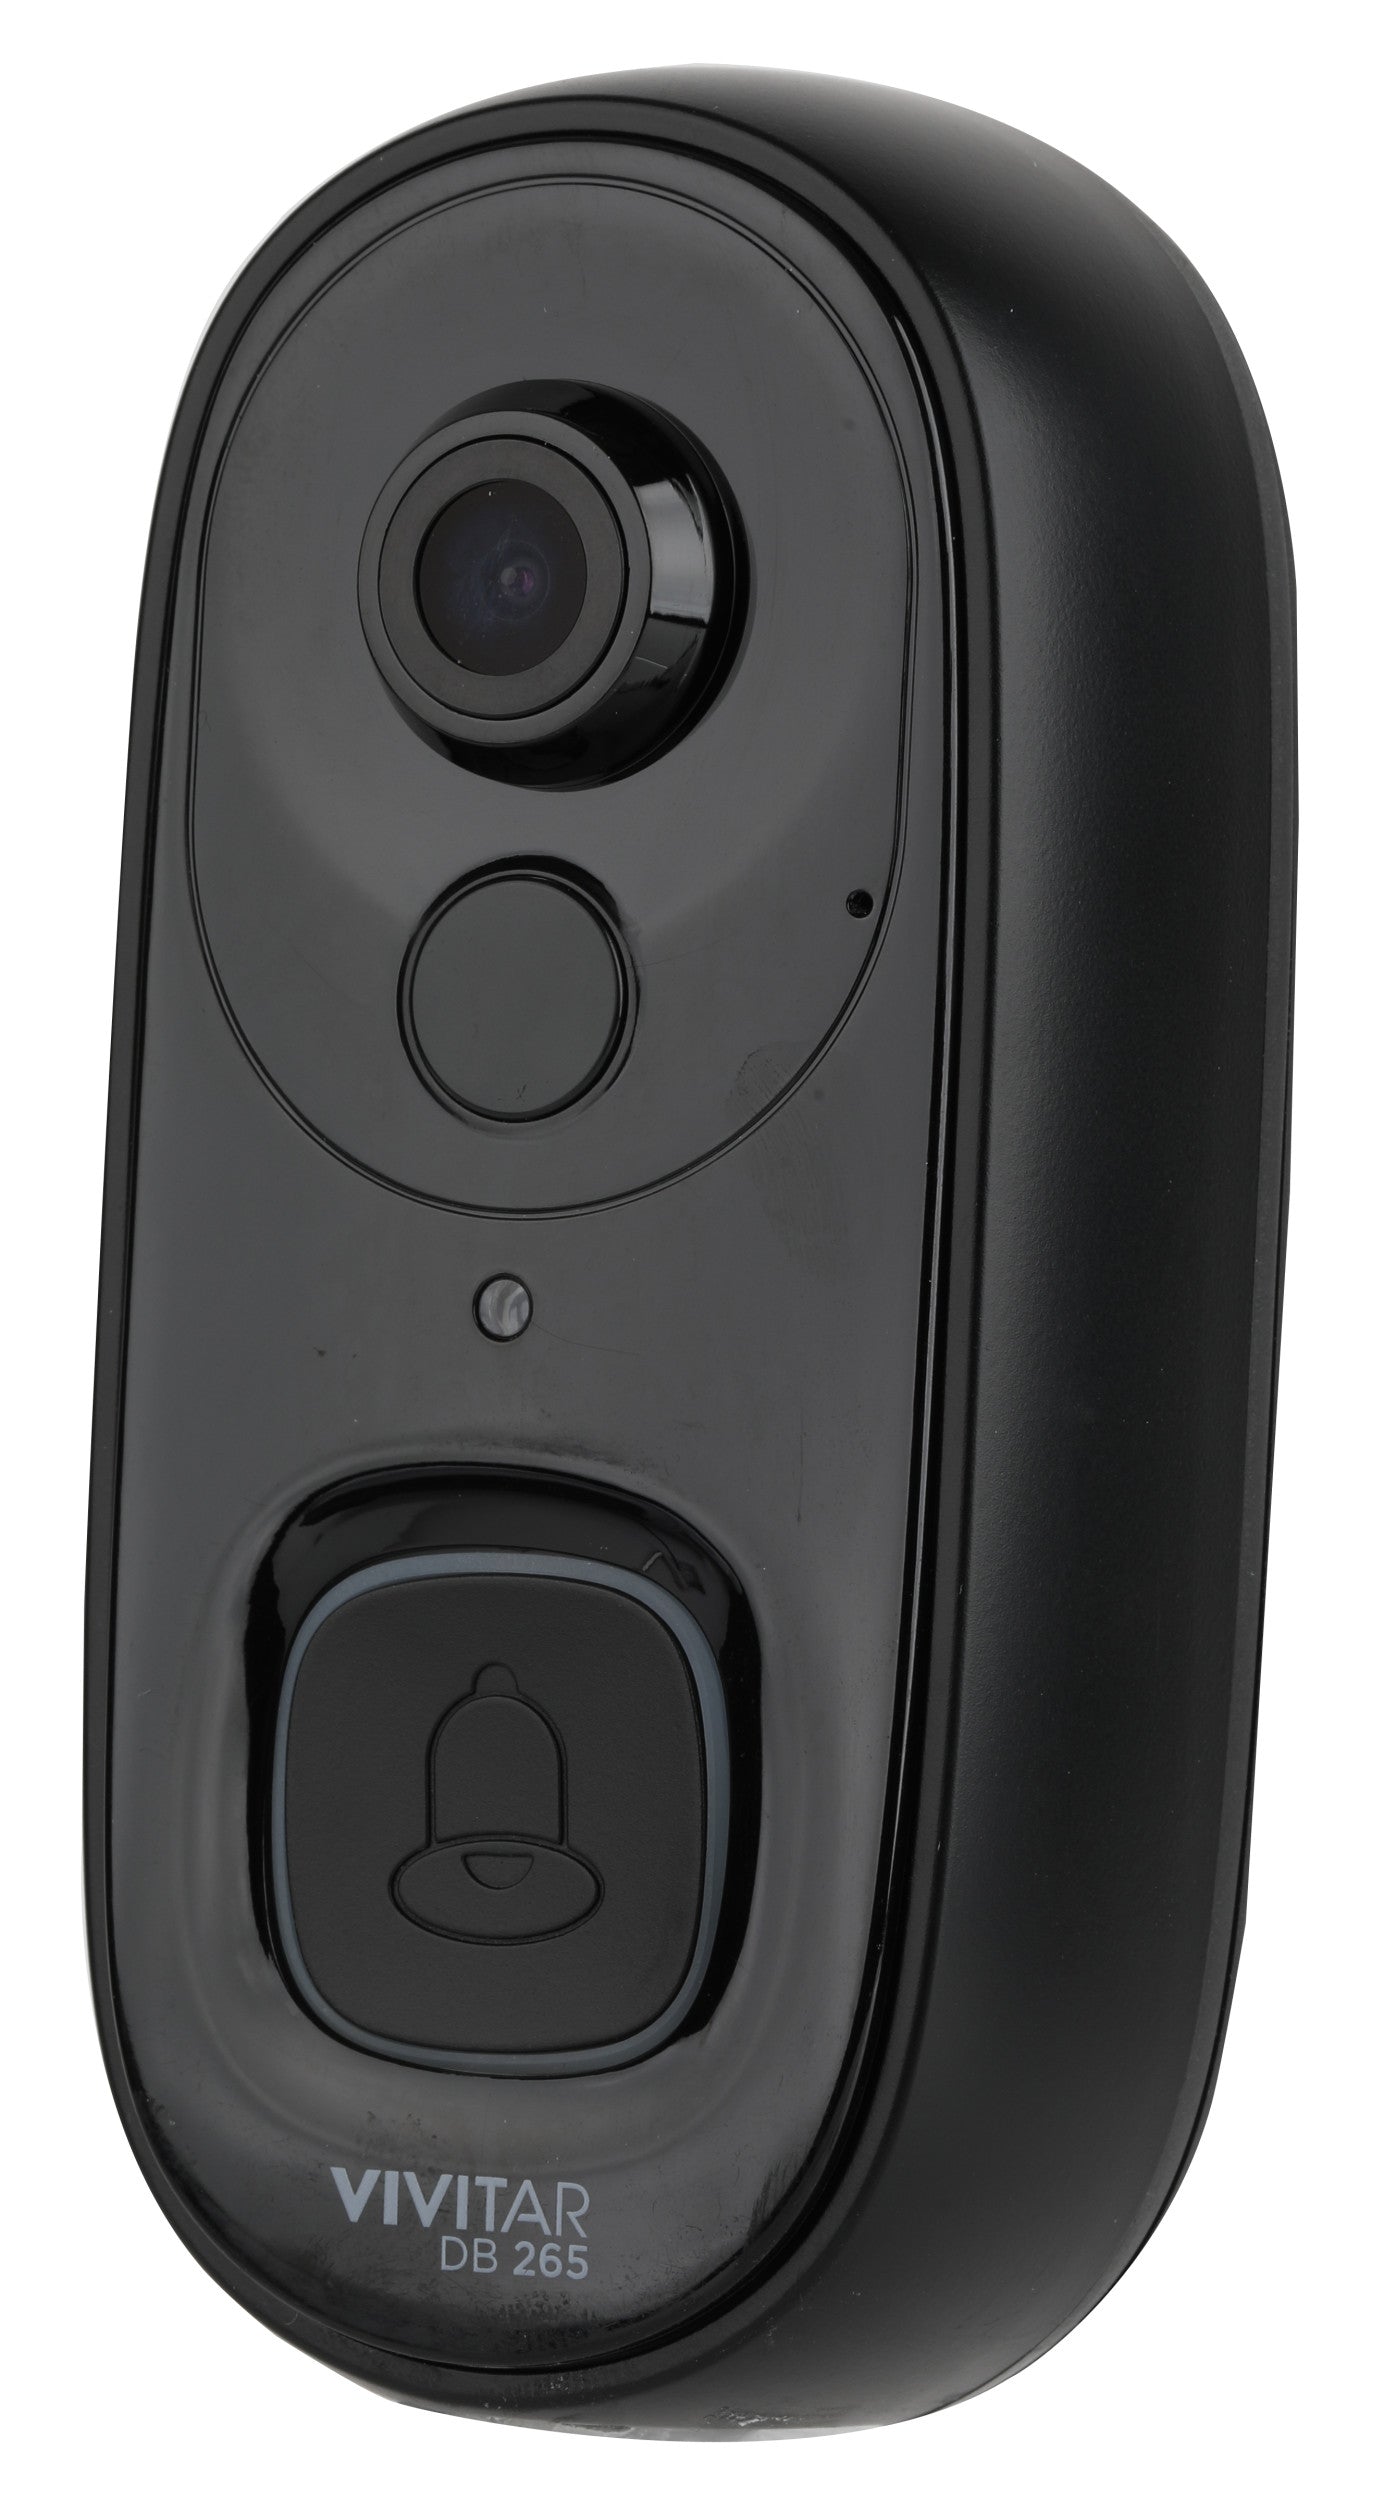 vivitar wireless doorbell